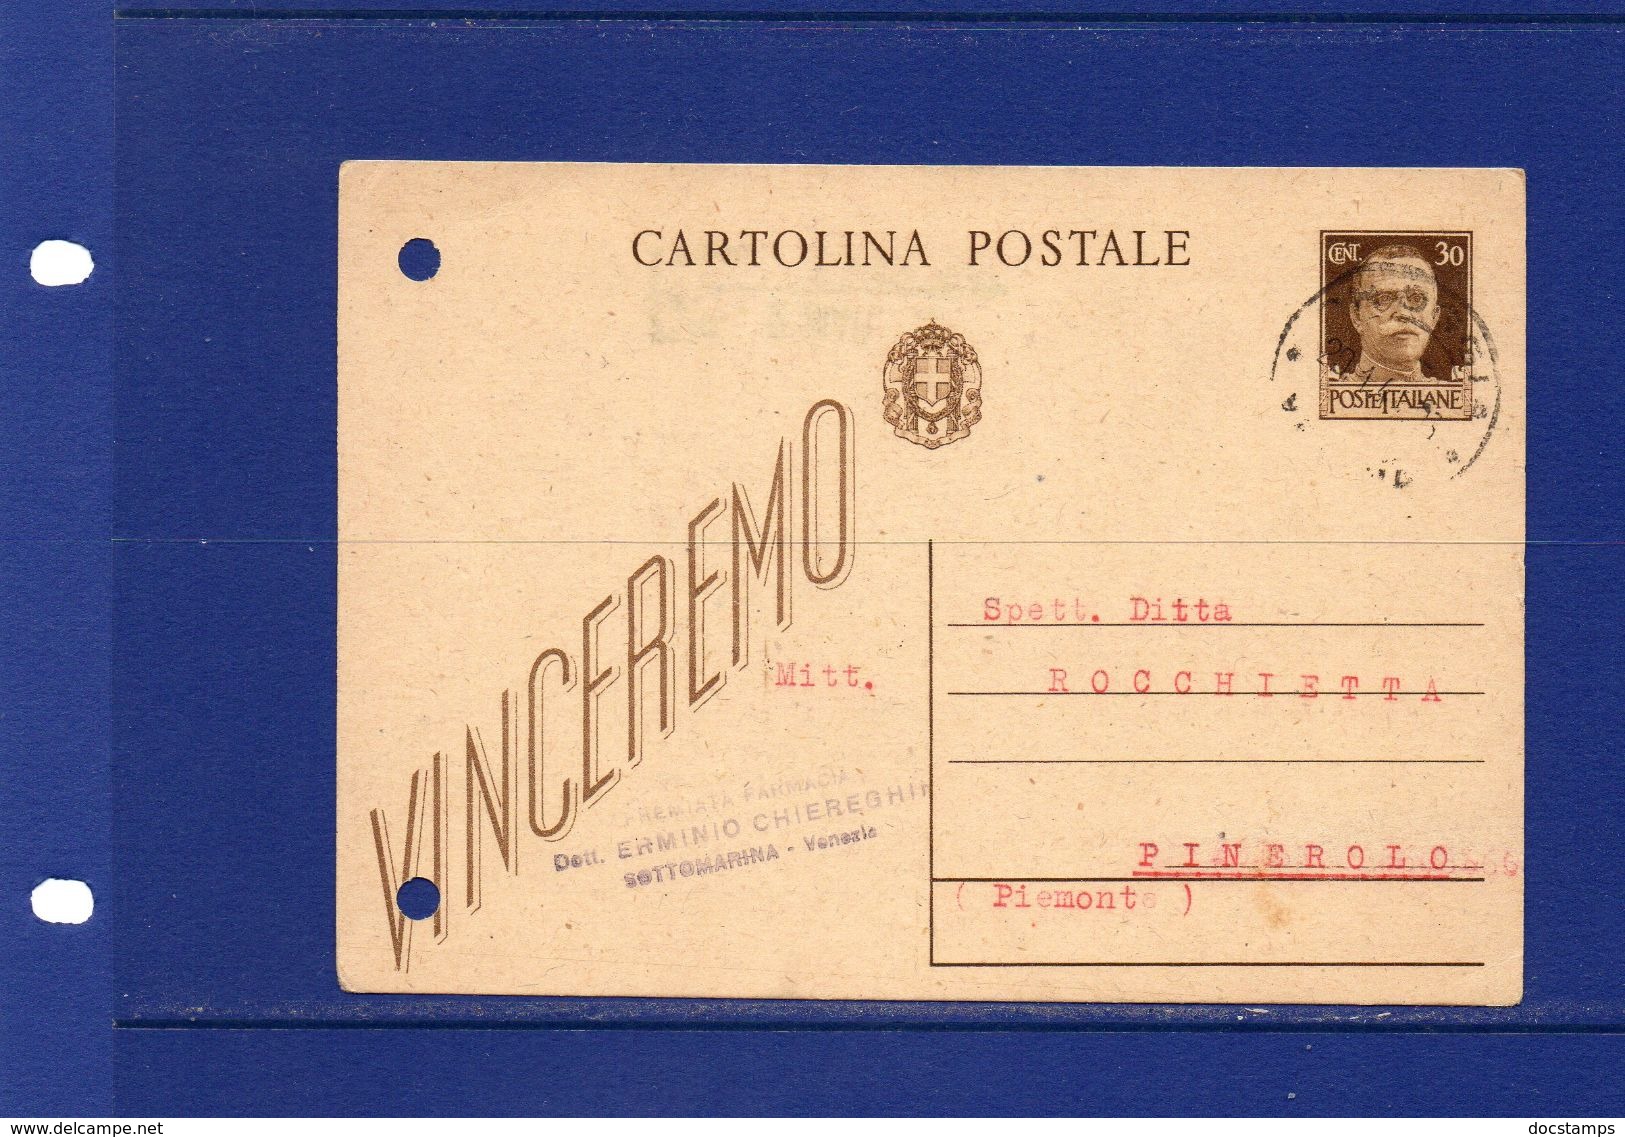 Pharmacy-Pharmacie-Apotheke-18-1-1944-Premiata  Farmacia Dott. Erminio Chiereghin -Sottomarina (Venezia) - Farmacia